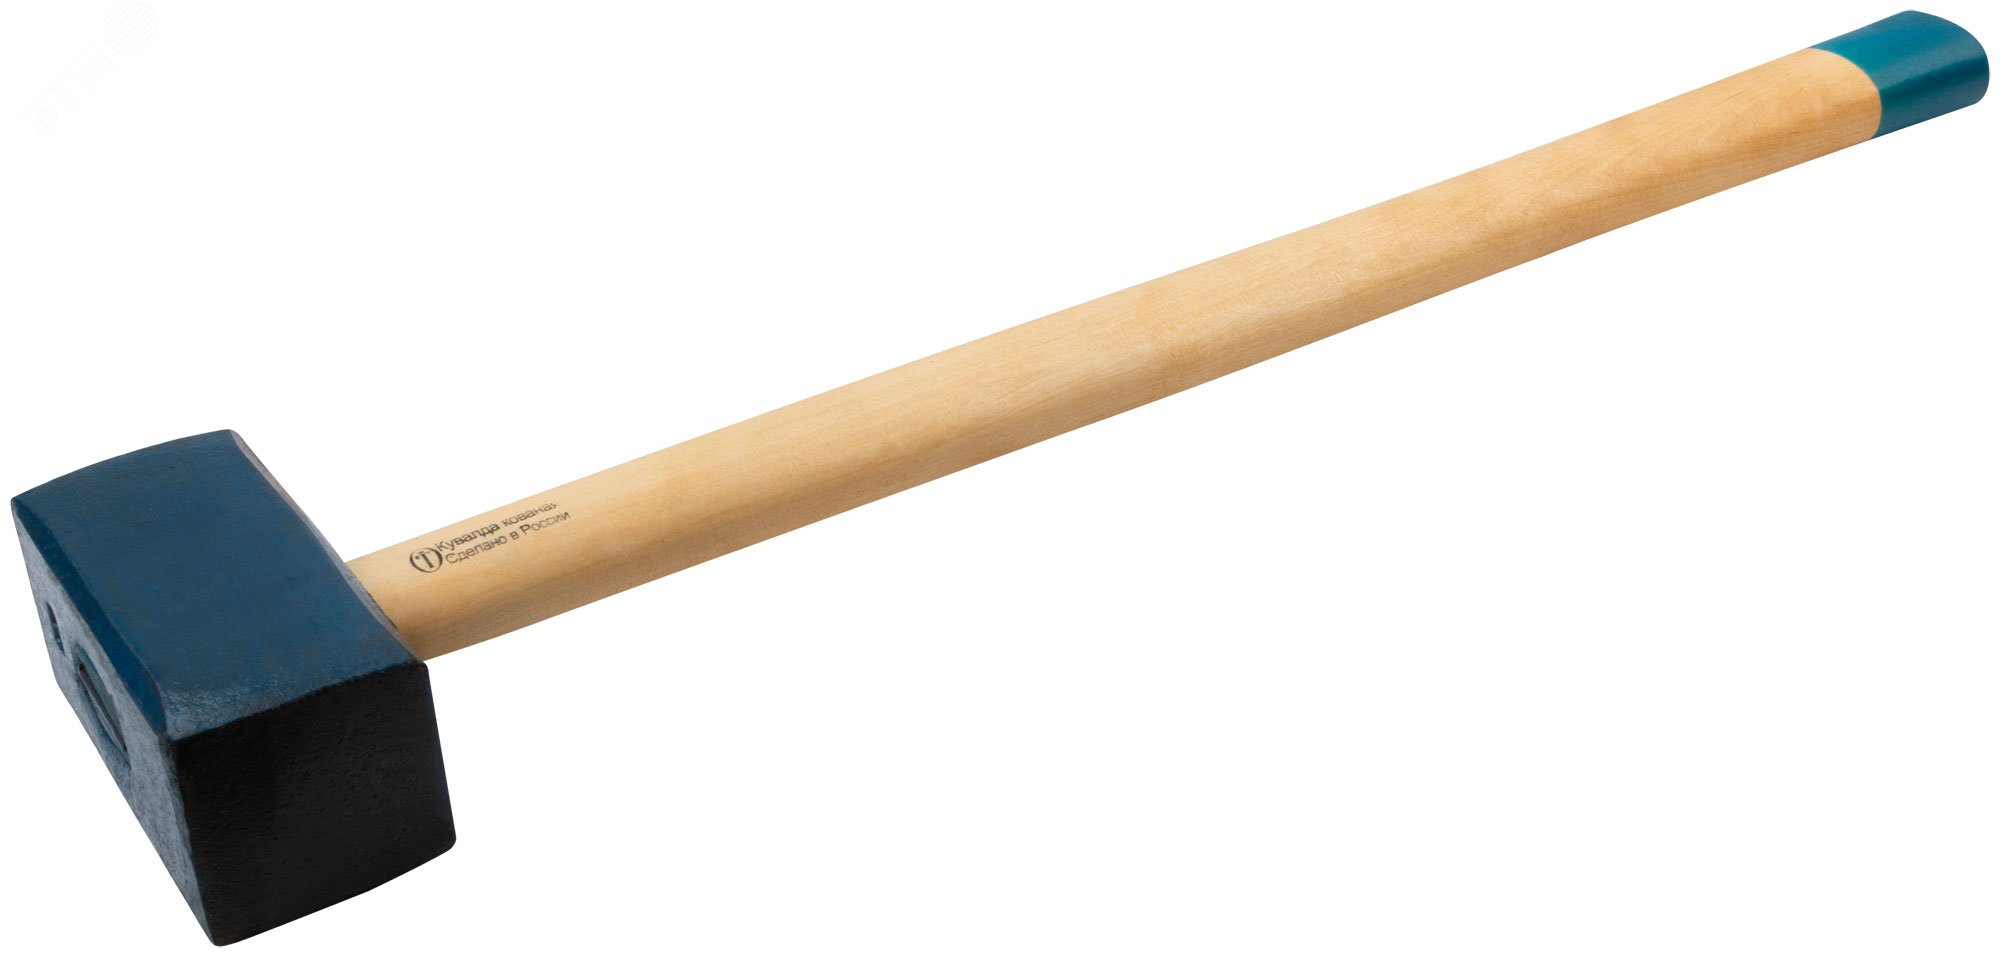 Кувалда кованая в сборе, деревянная эргономичная ручка 8.6 кг 45038 РОС - превью 2